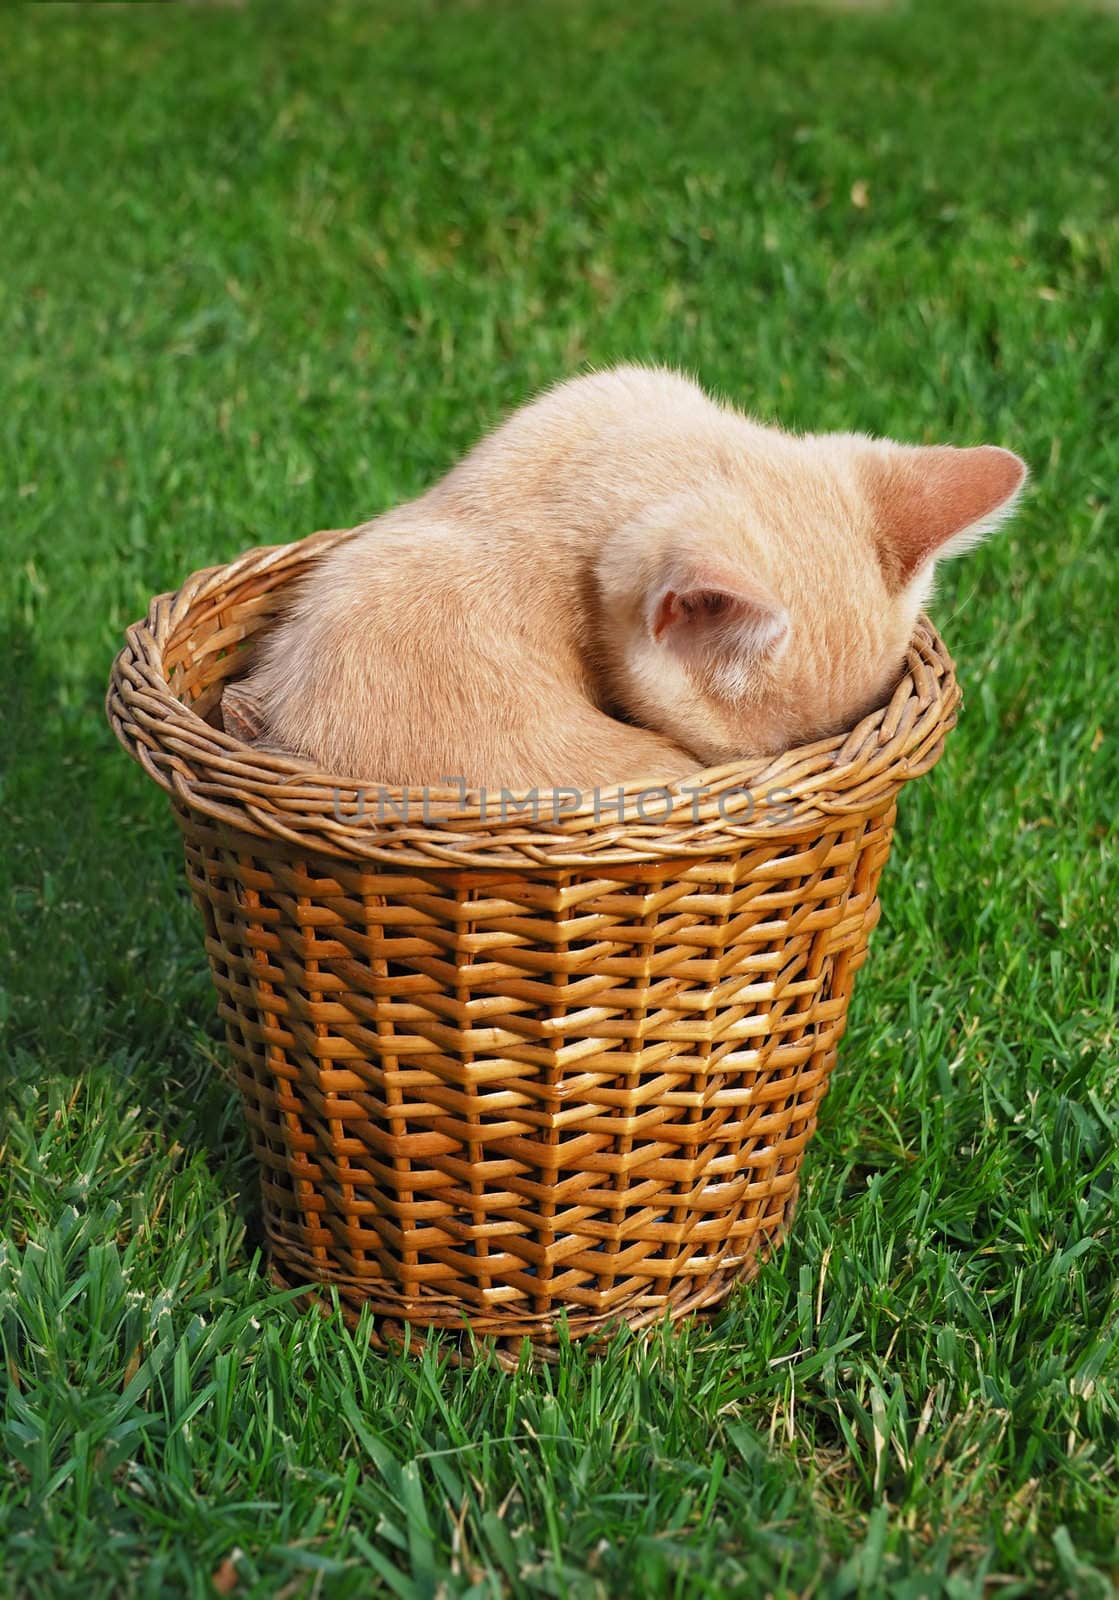 Cute yellow kitten hiding in a basked.